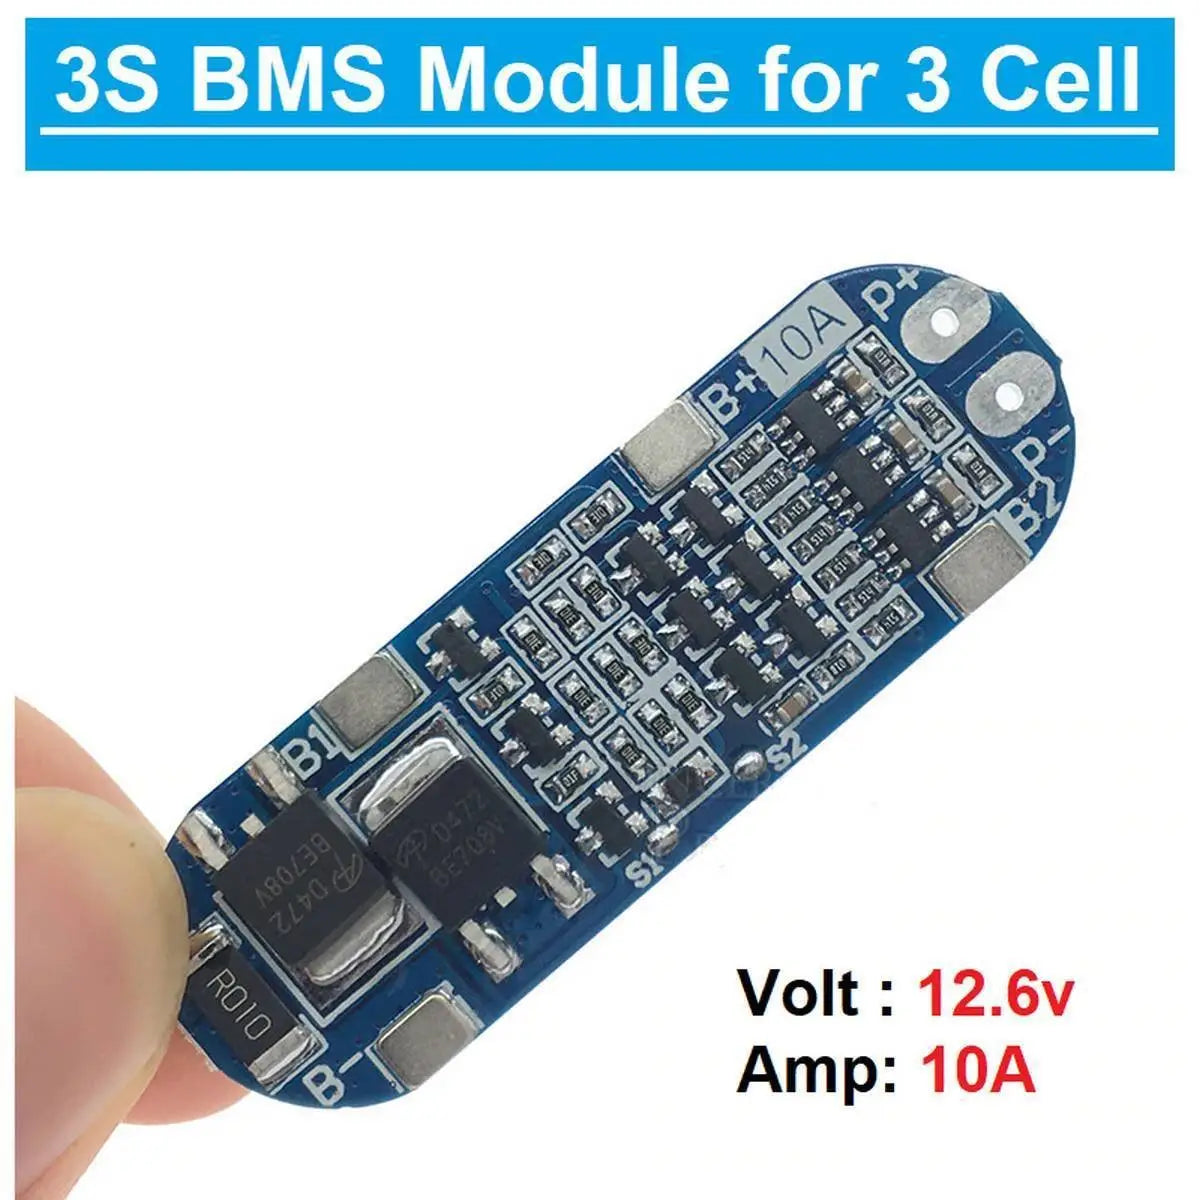 3S BMS 12V 10A 11.1V - 12.6V 3 Cell 18650 Lithium Battery Charging